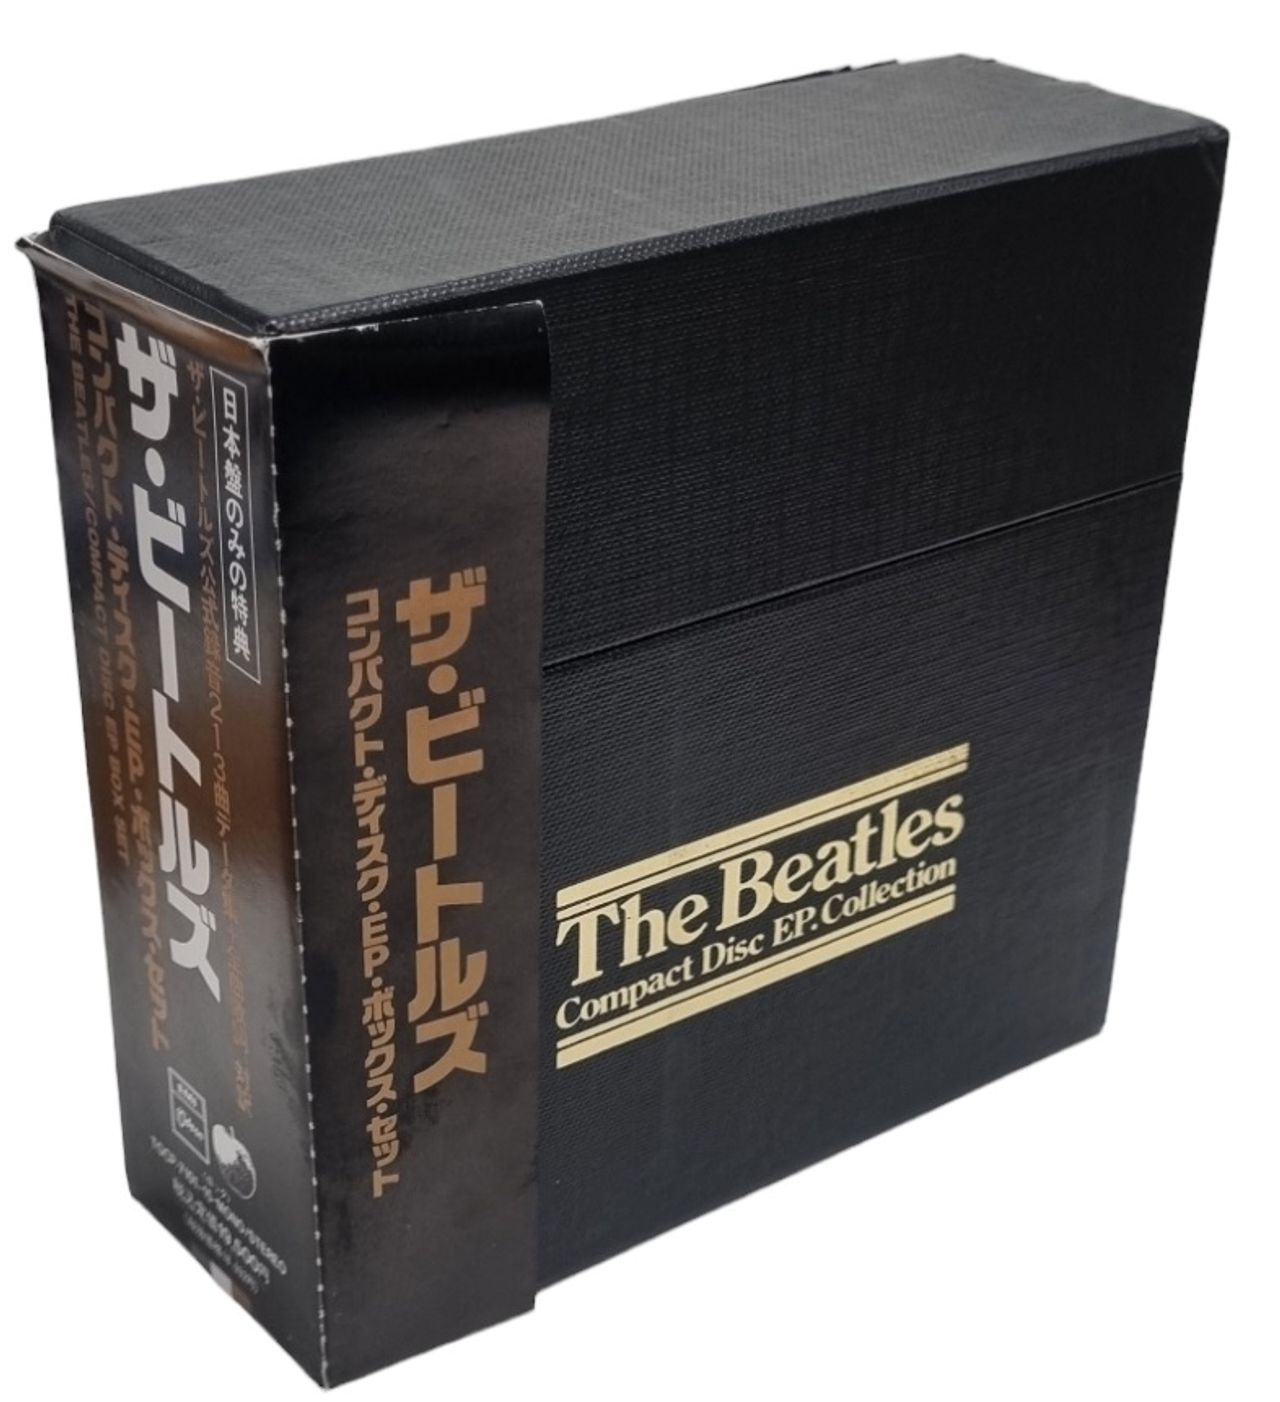 ザ・ビートルズ/E.P ・Collection The Beatles - CD